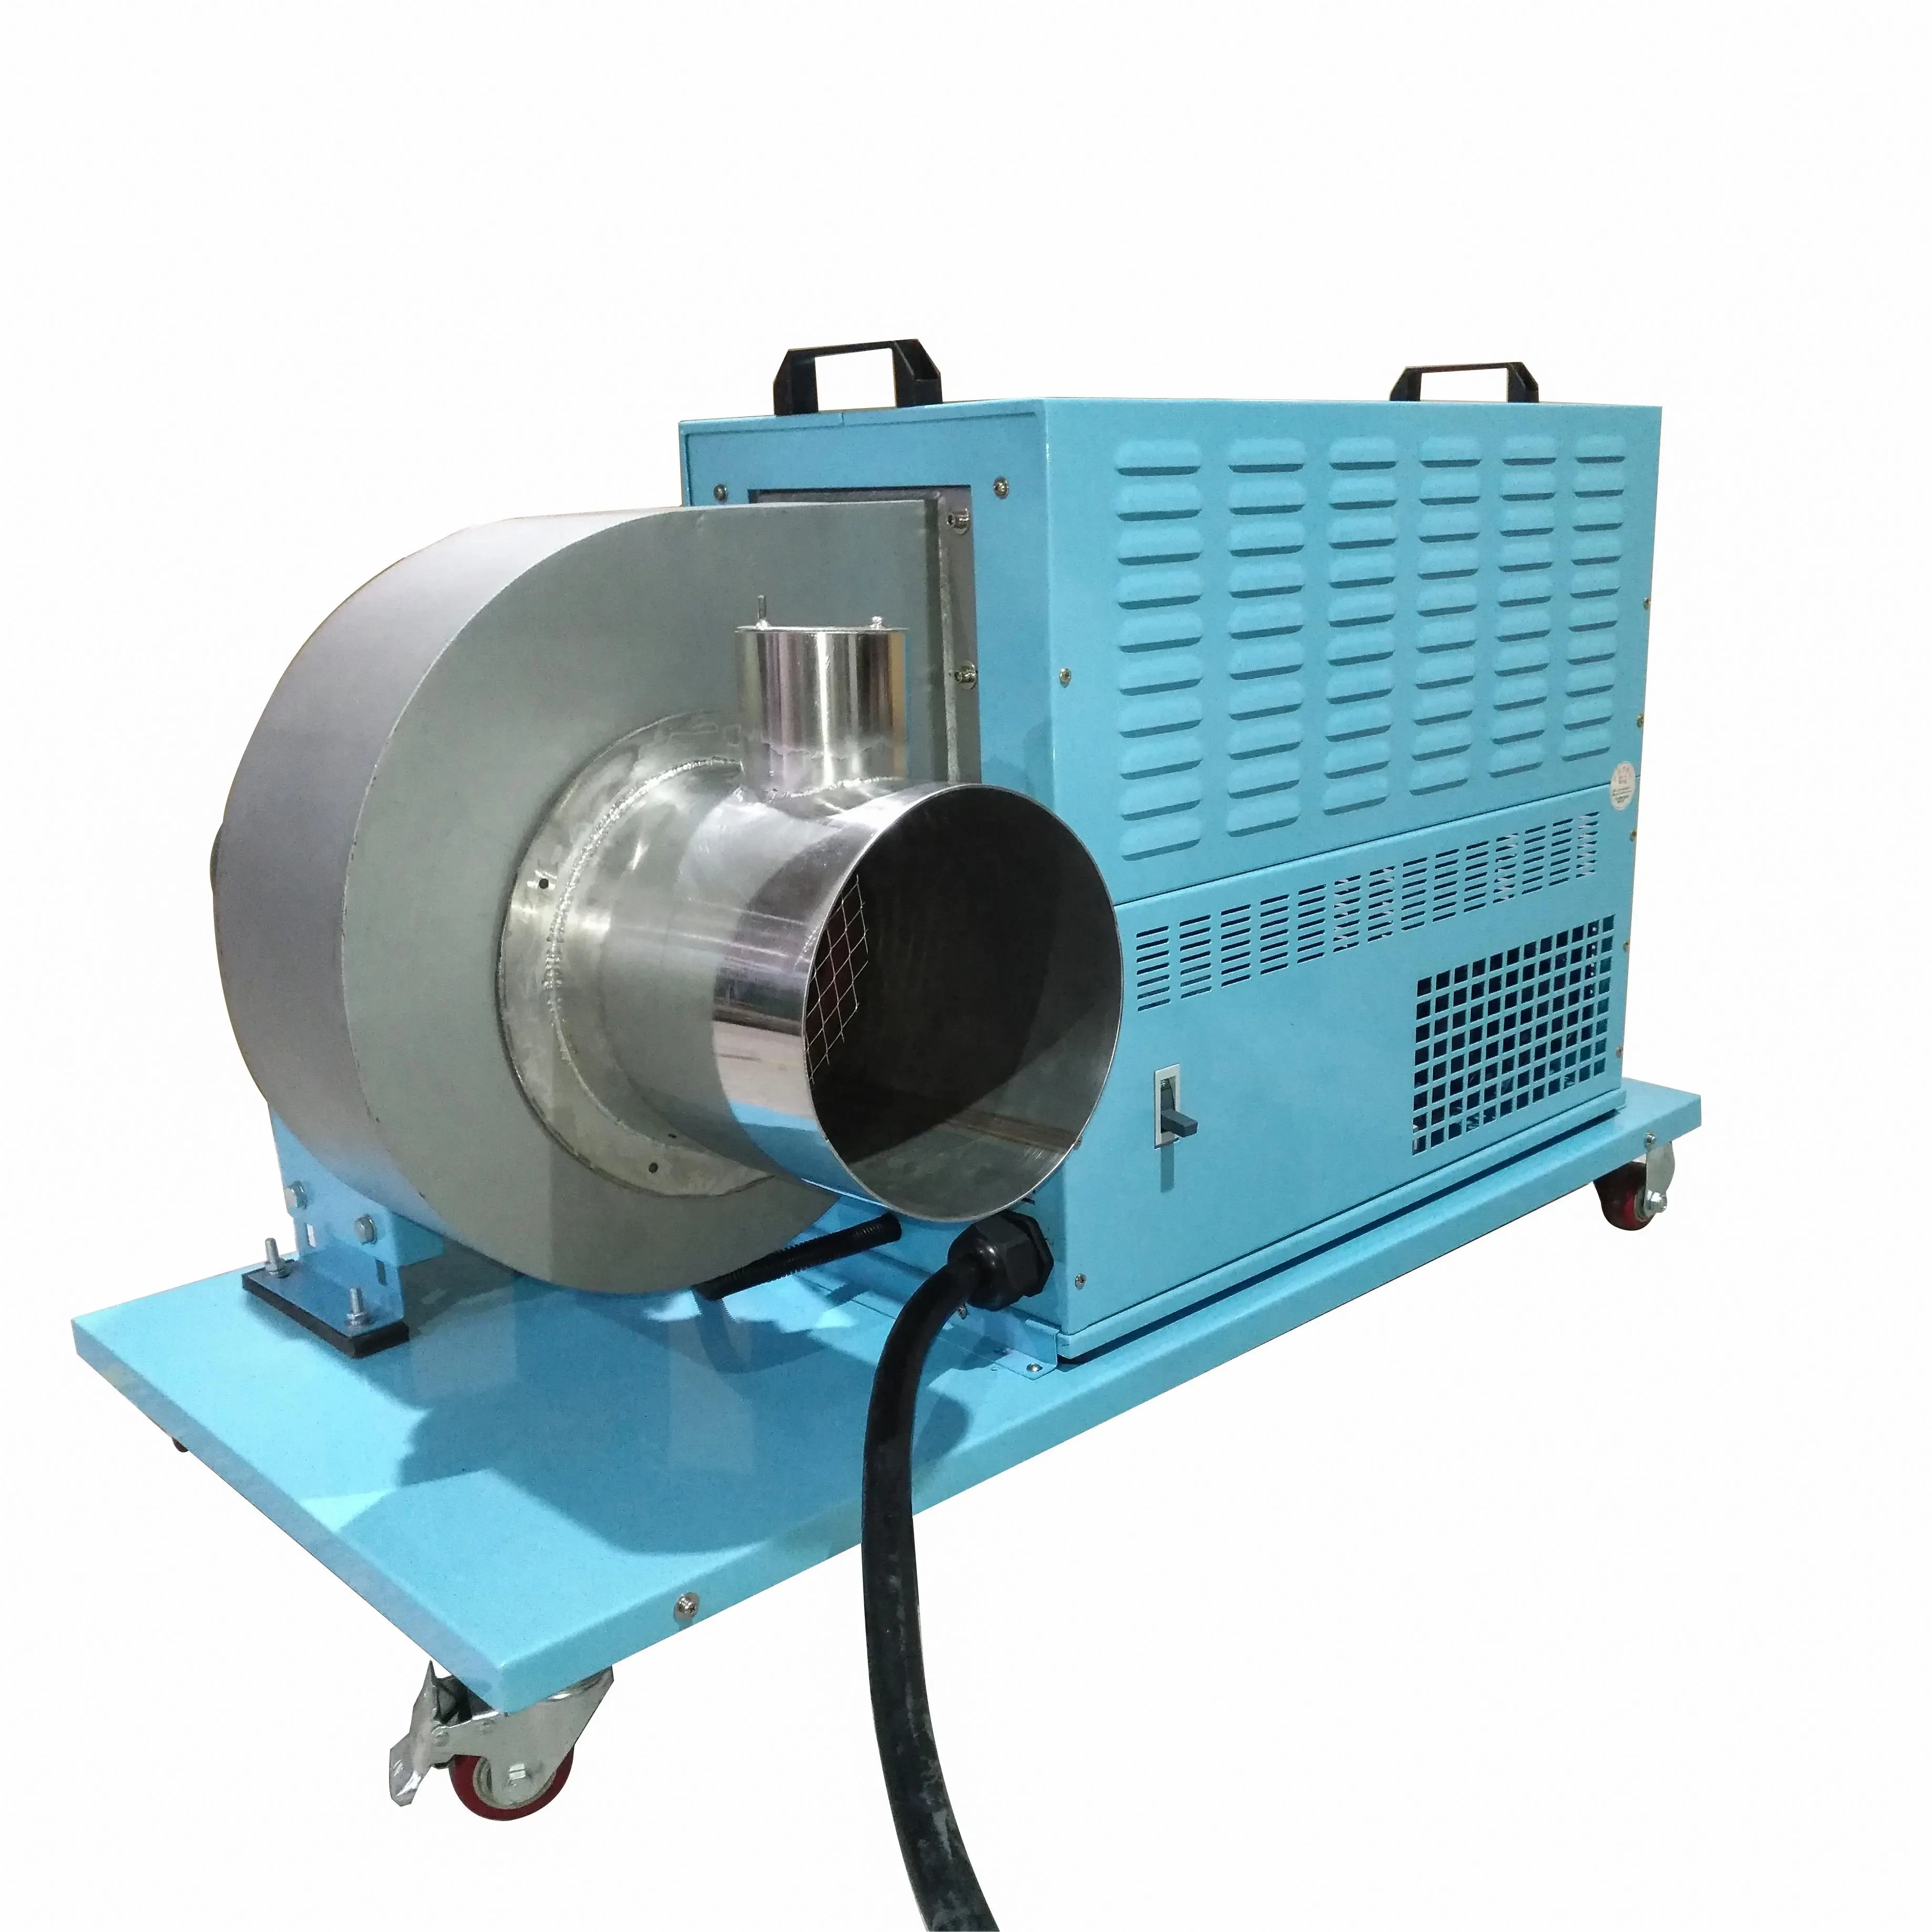 Kurutma için tek fazlı 220V küçük endüstriyel sıcak havalı ısıtıcı santrifüj hava fanı